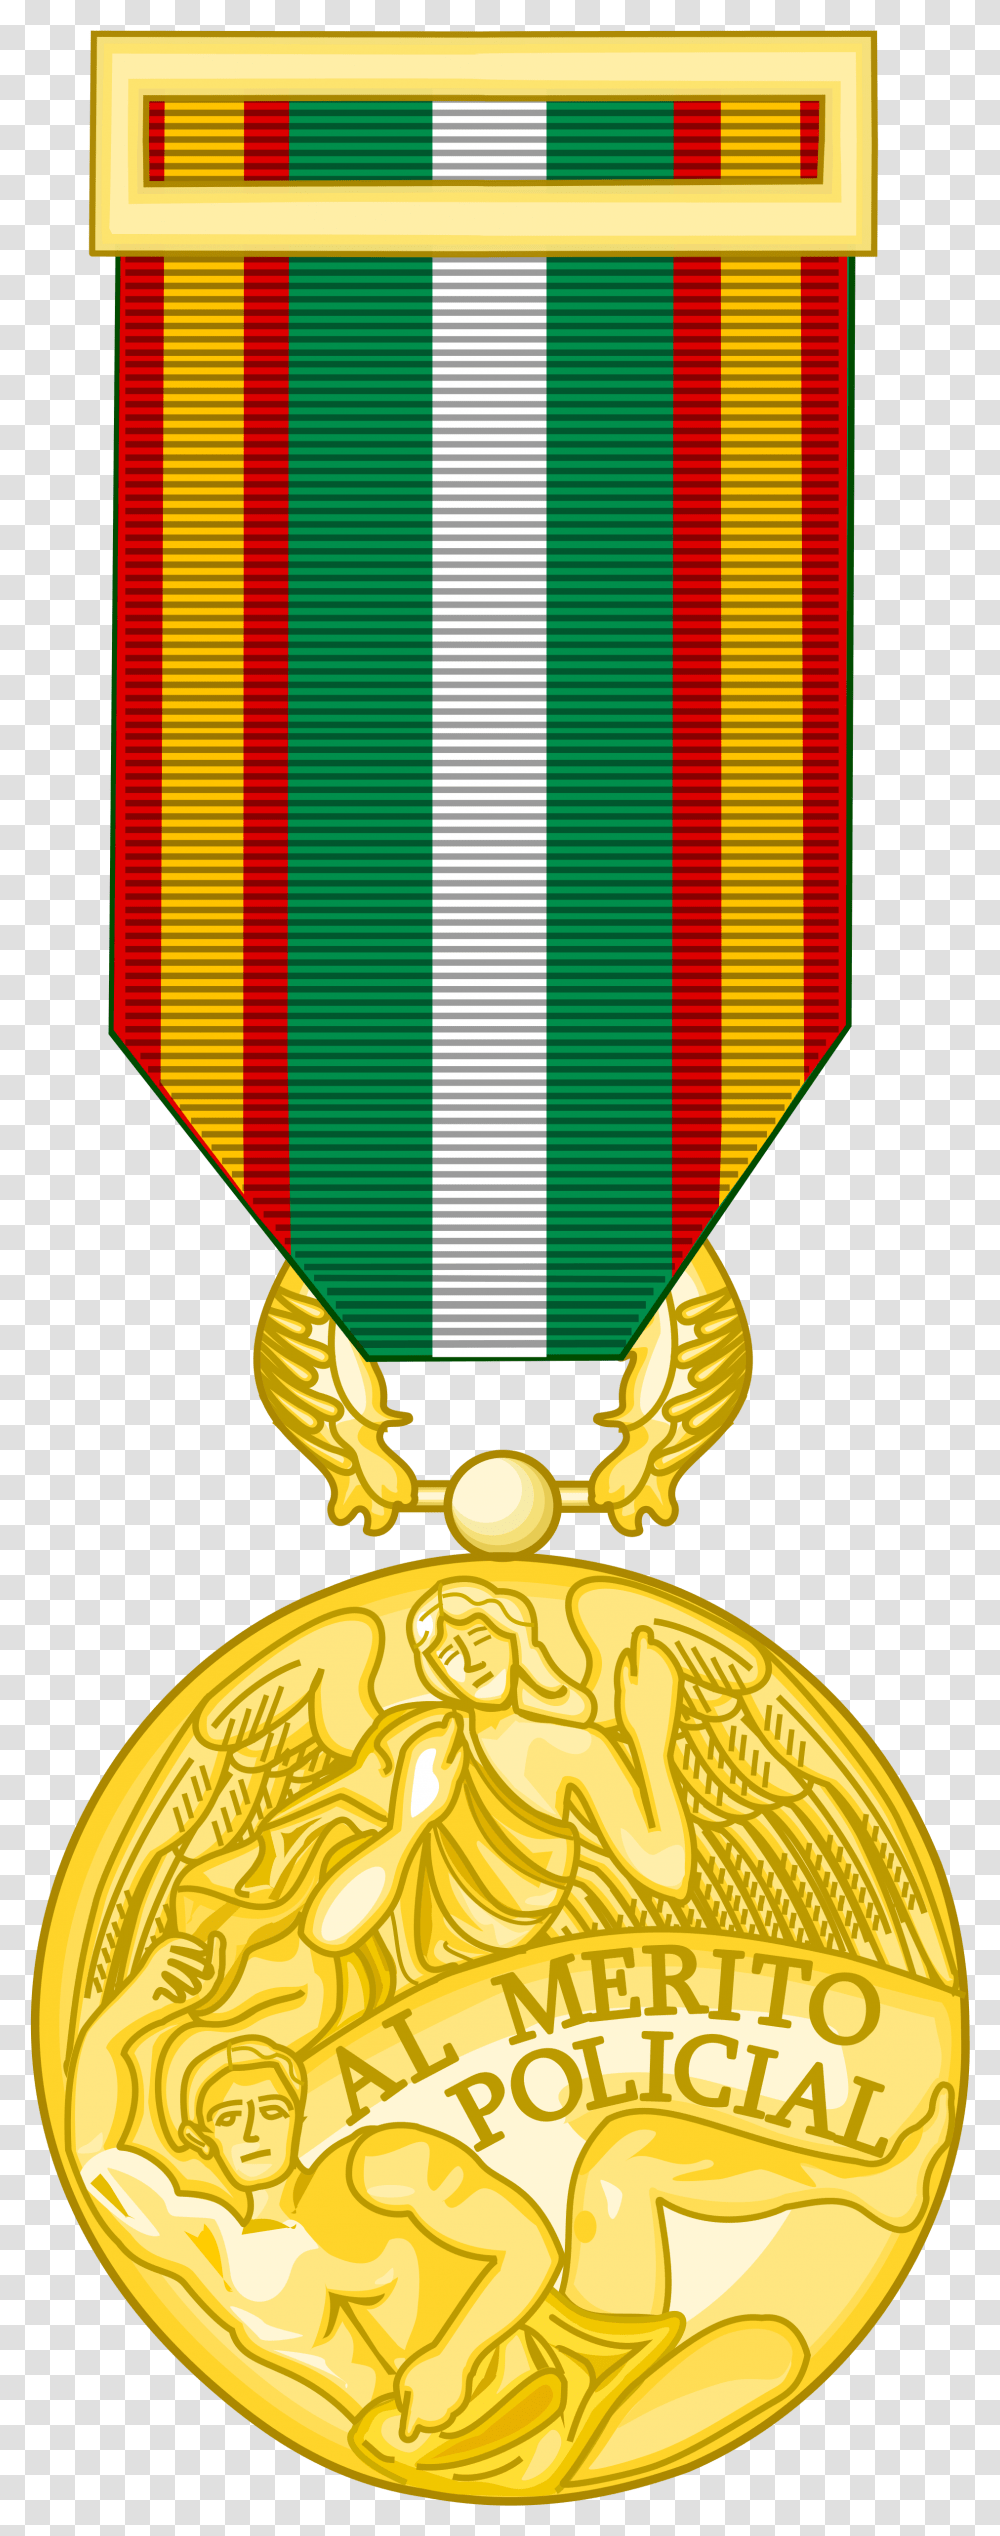 Medal Clipart Svg Medal Of Police Merit Greece, Trophy, Gold, Logo Transparent Png